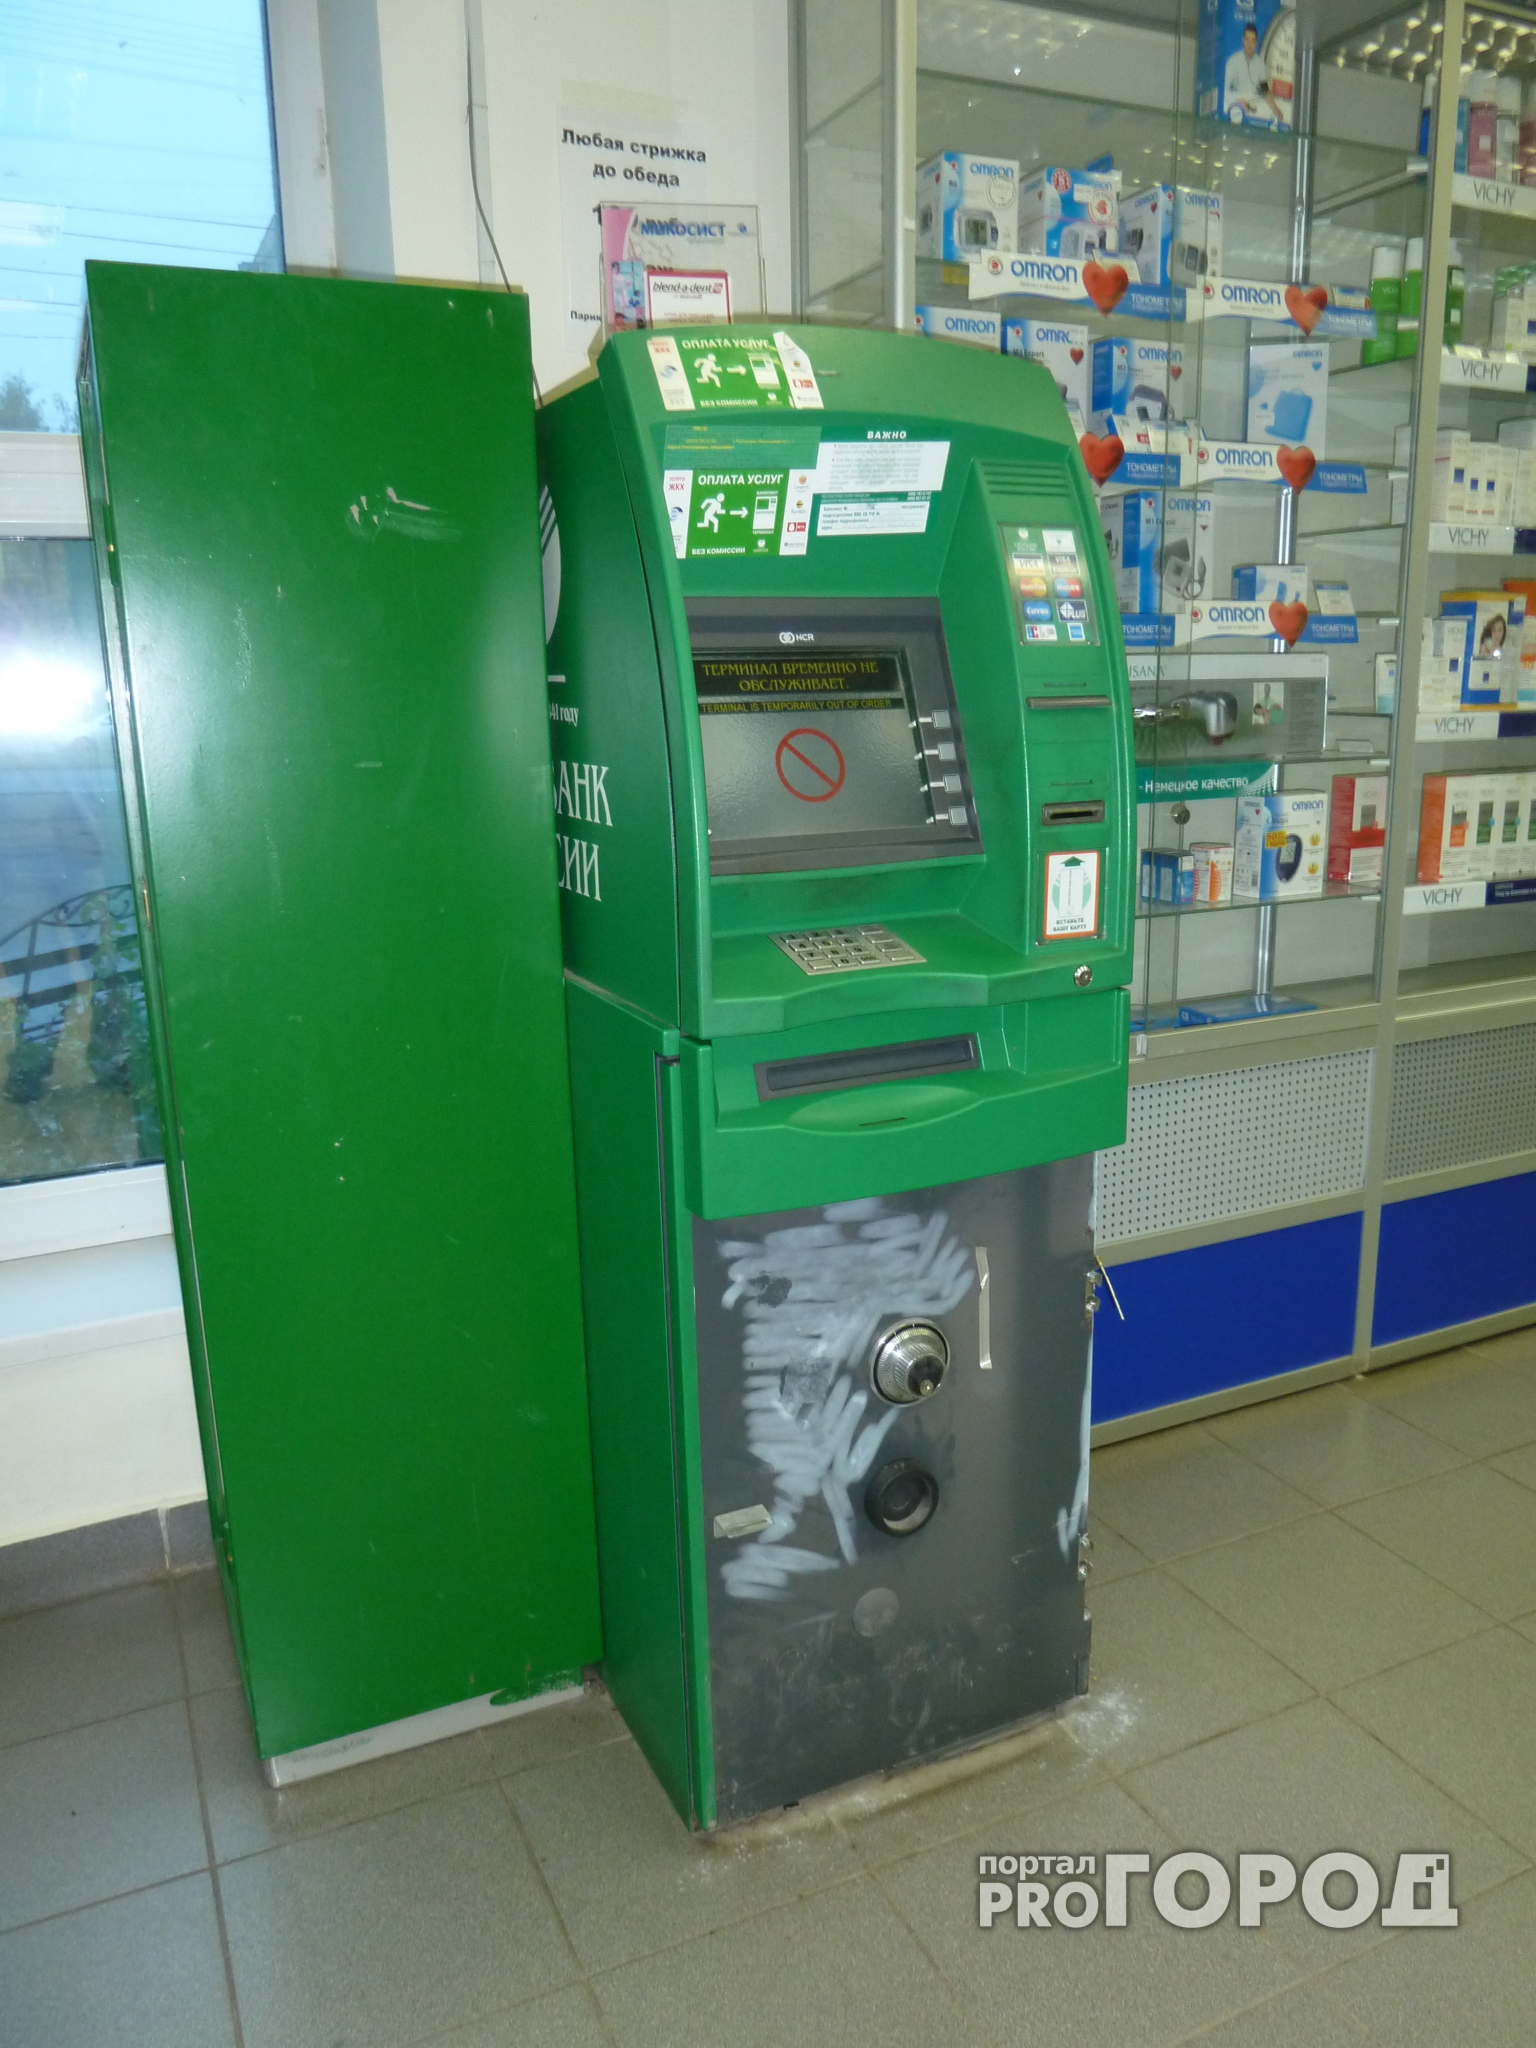 В Ярославле злоумышленники попытались взорвать банкоматы